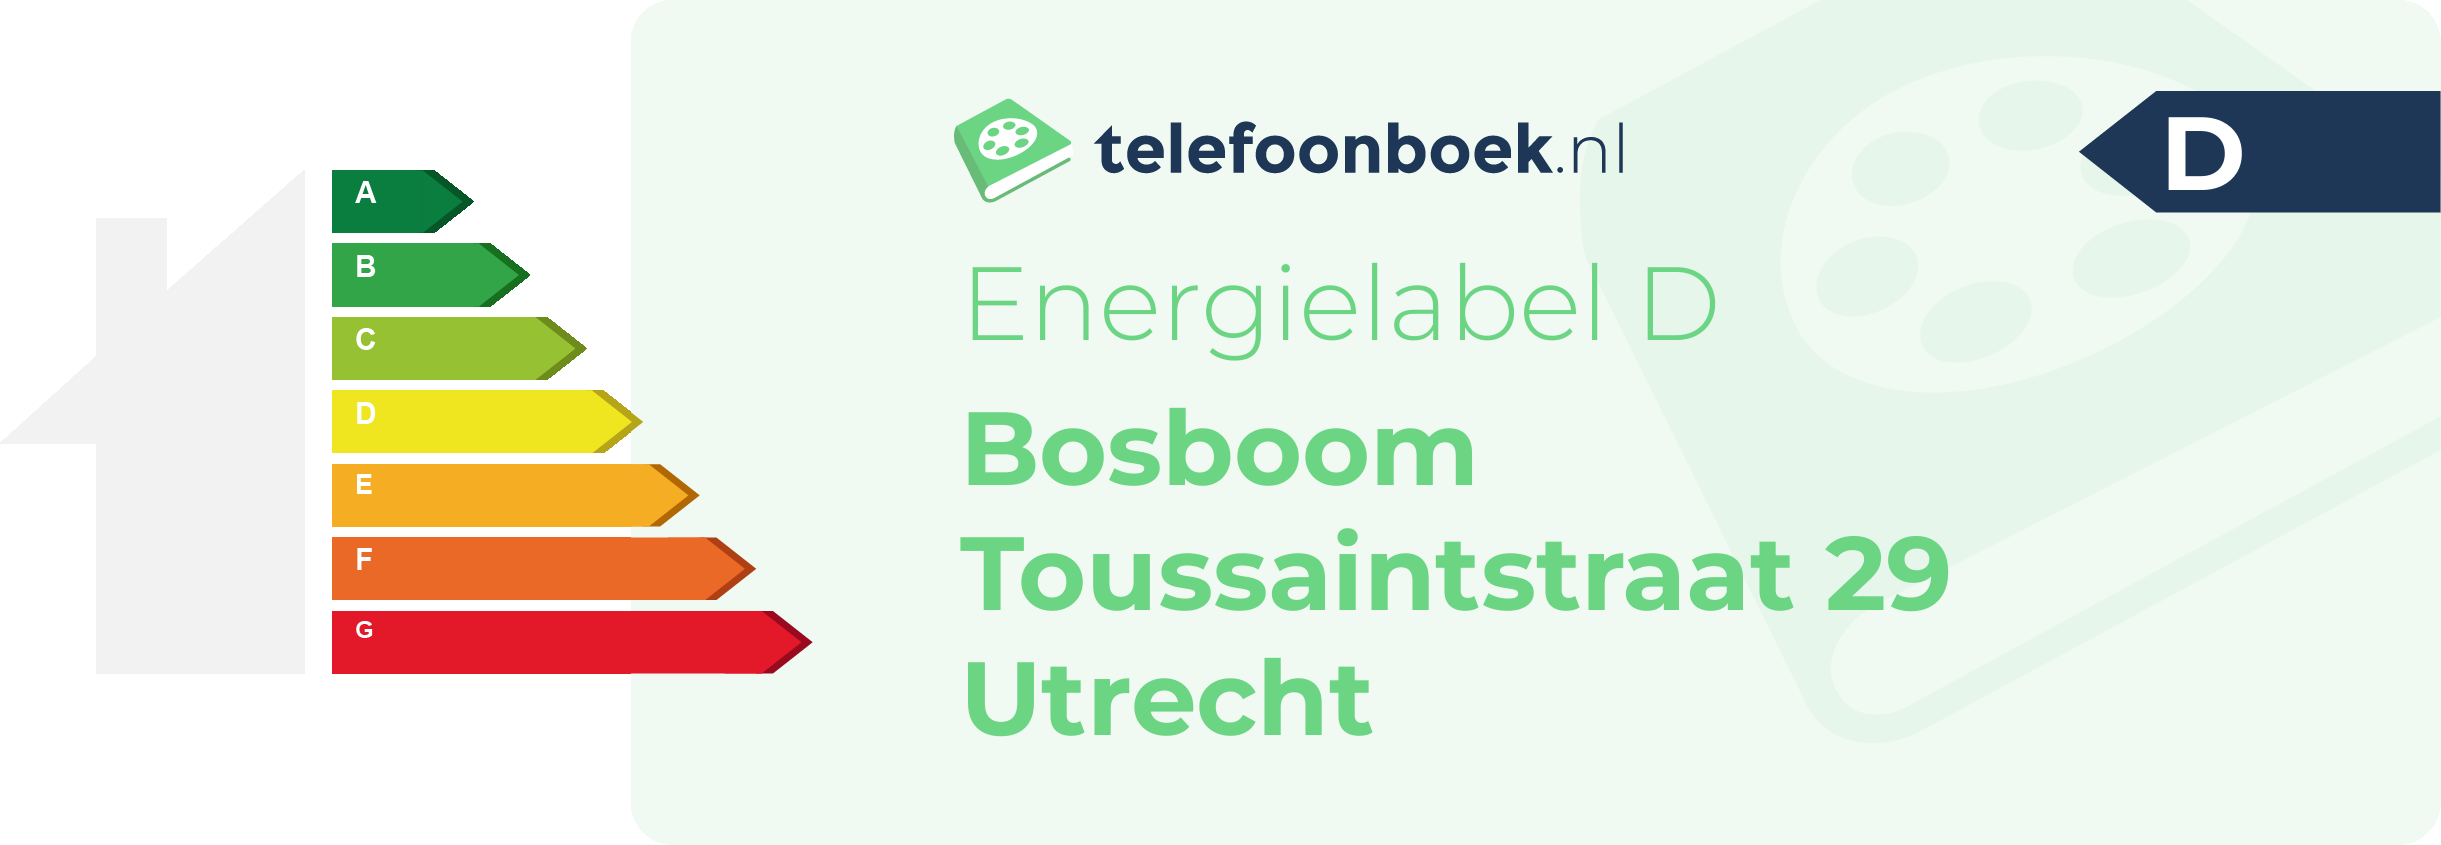 Energielabel Bosboom Toussaintstraat 29 Utrecht